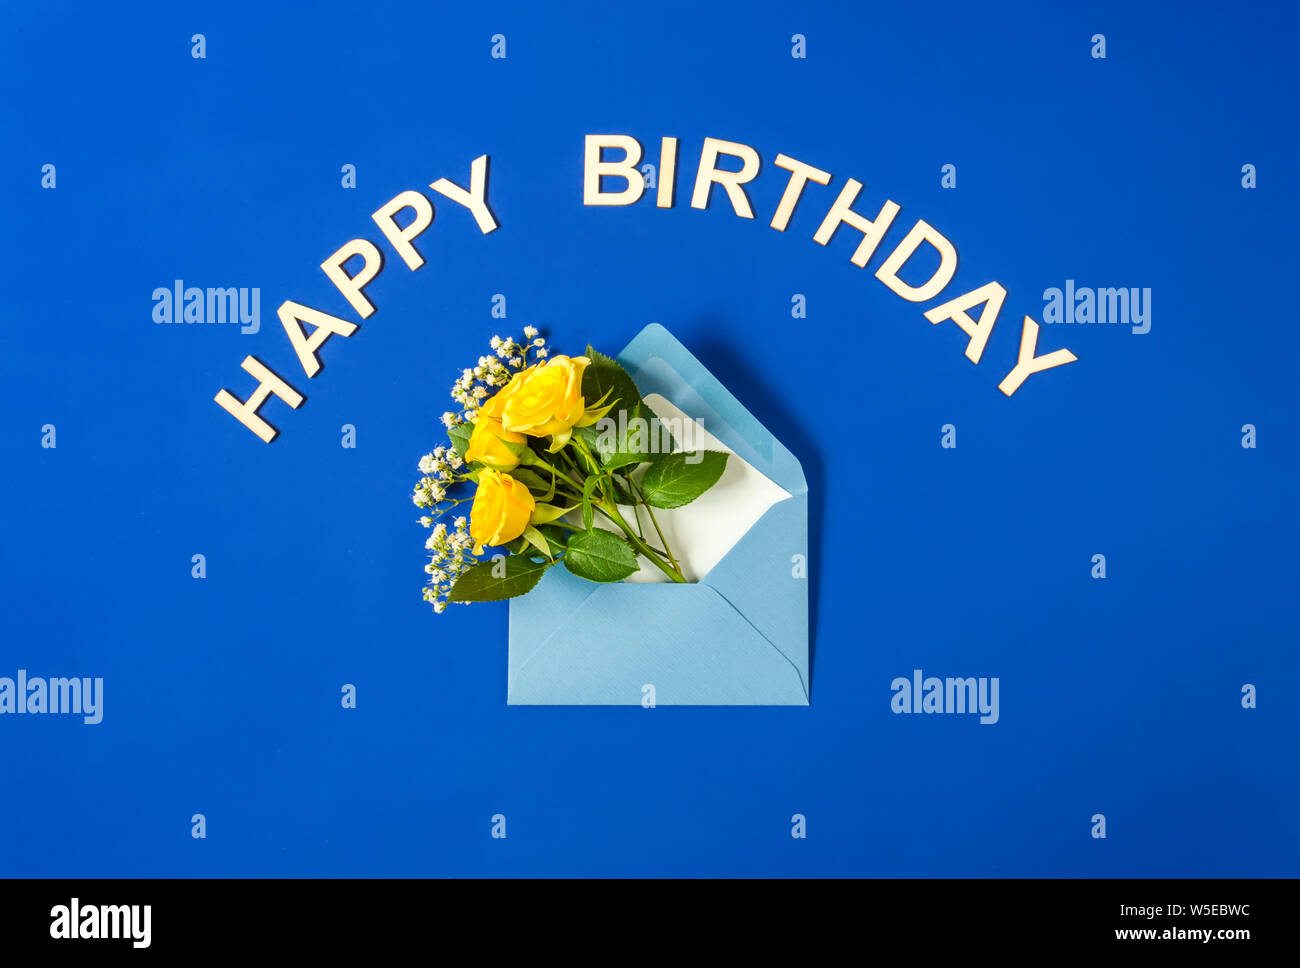 Gelbe Rosen und weißen Gypsophila in blauen Umschlag close-up auf blauem Hintergrund. Text Happy Birthday, Holz- briefe. Ansicht von oben, flach. Vorlage für Stockfoto